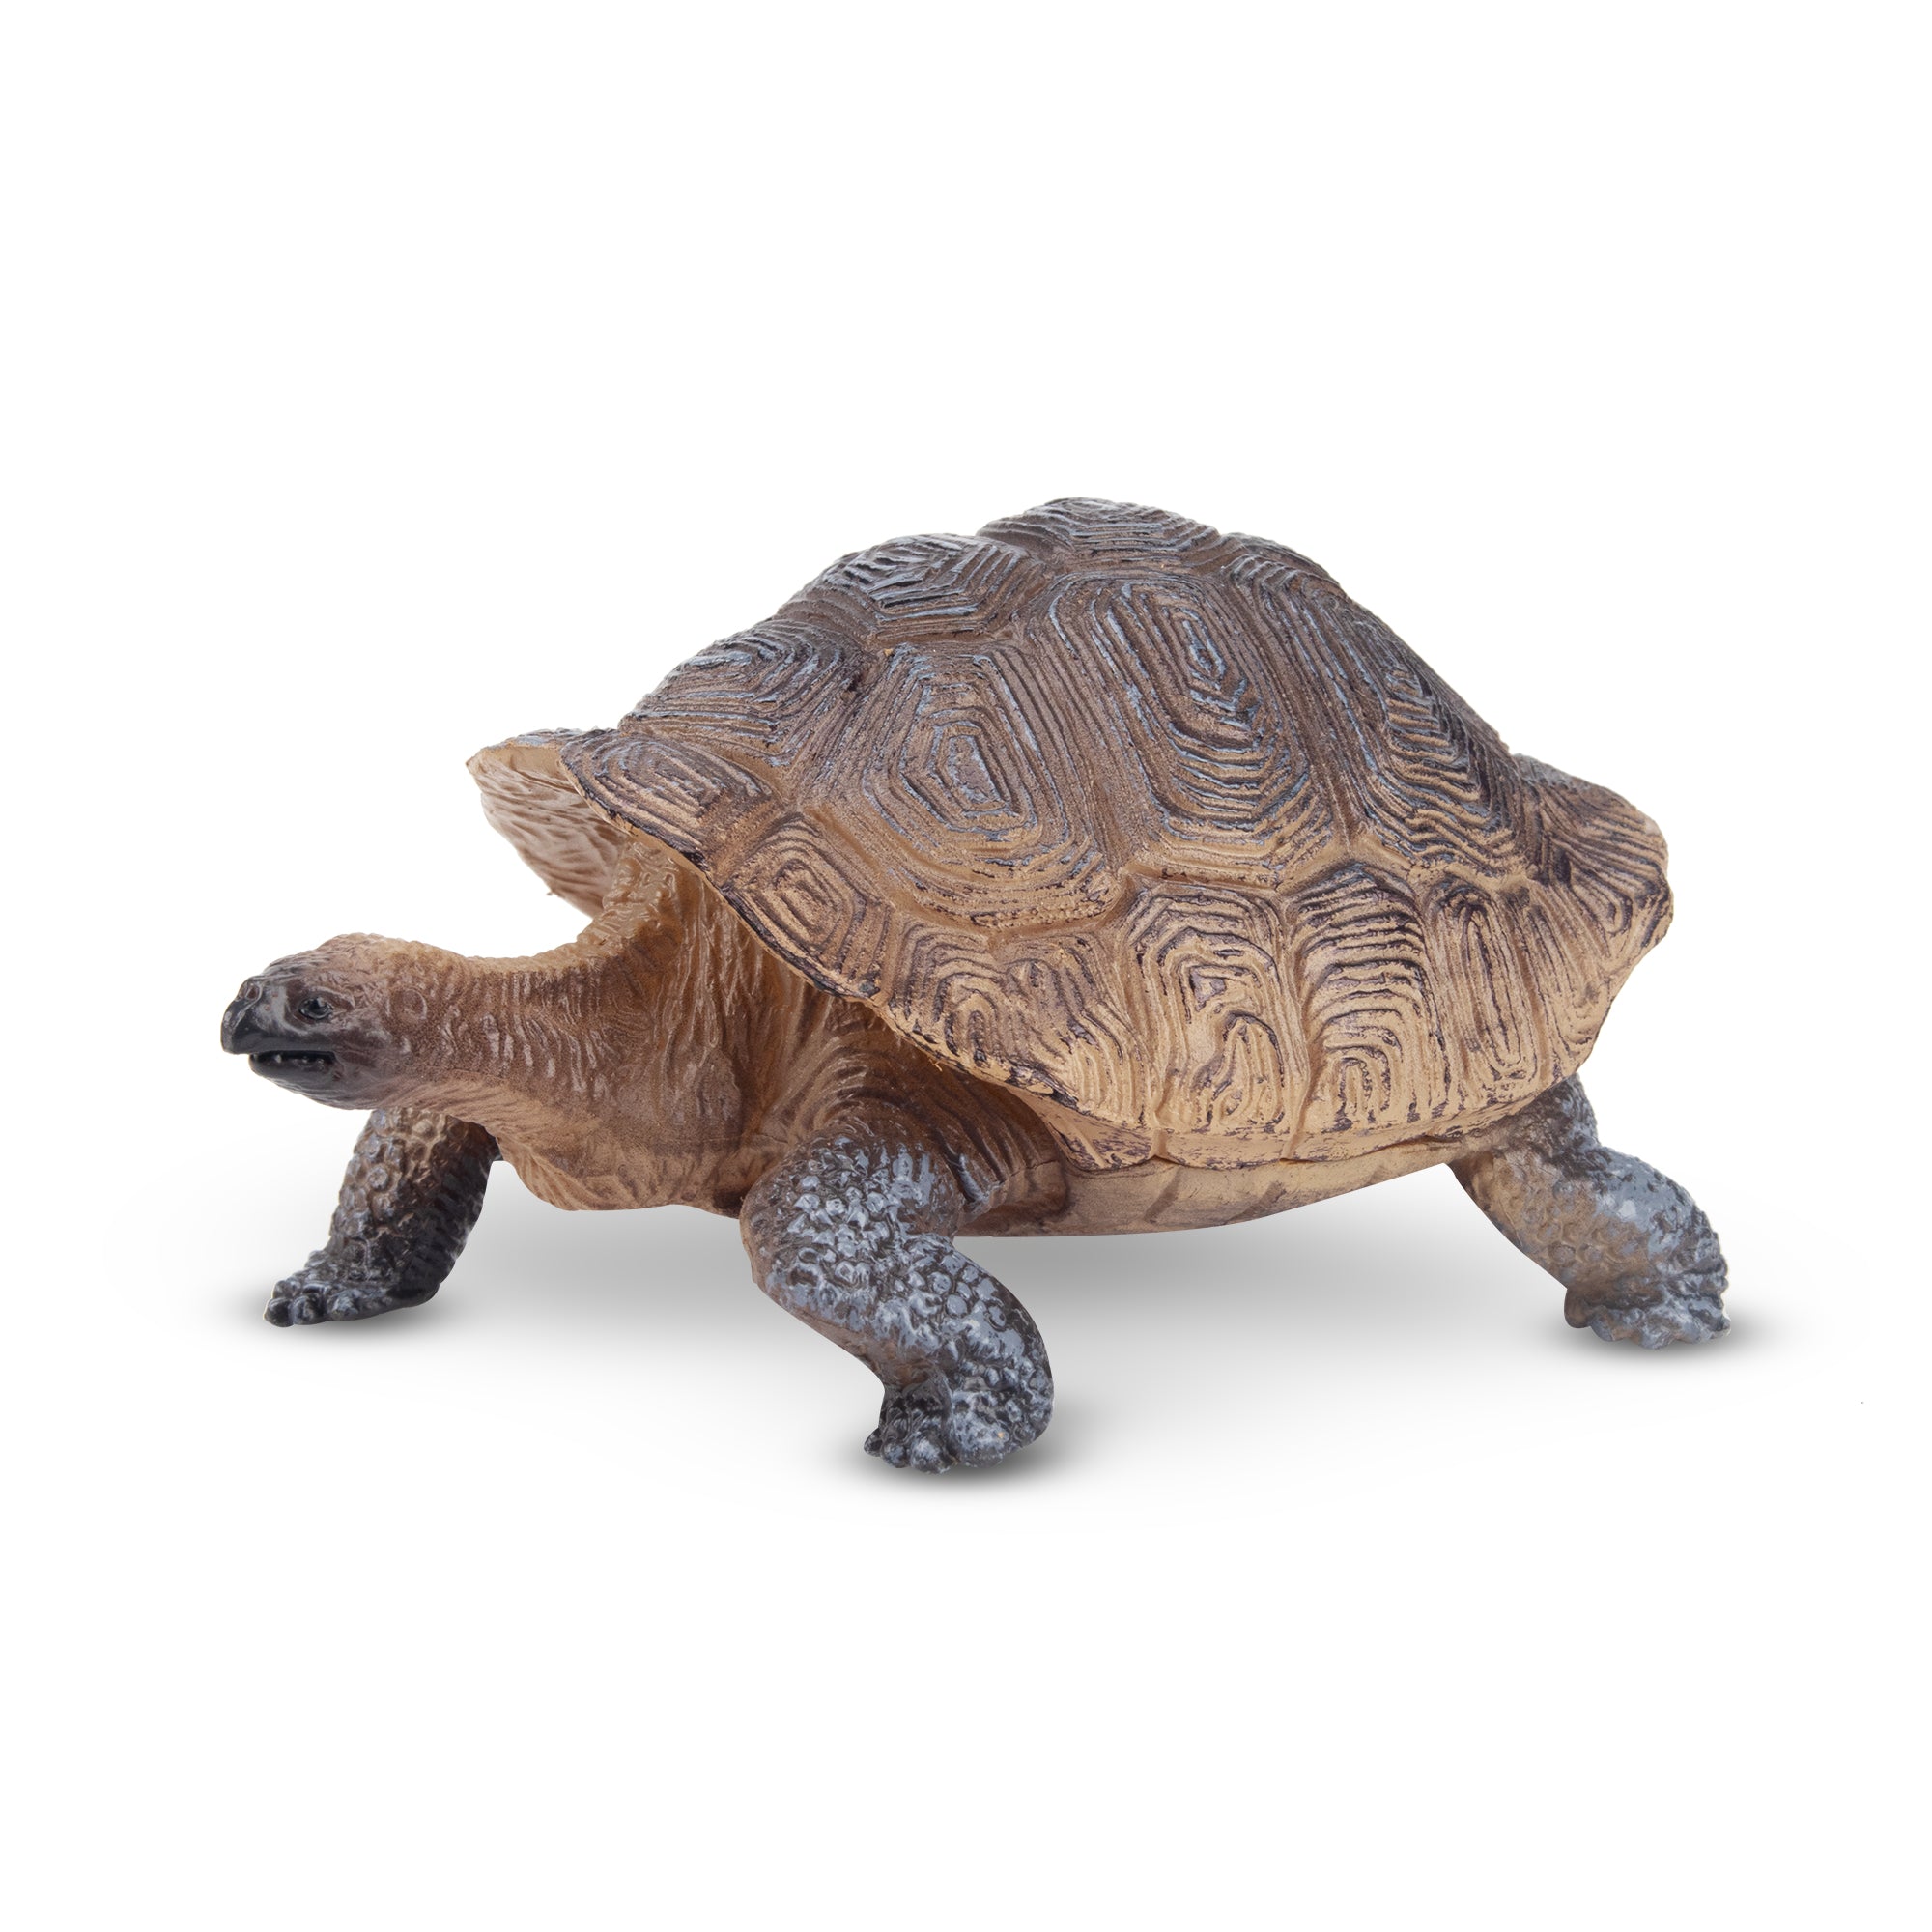 Toymany Galapagos Tortoise Figurine Toy